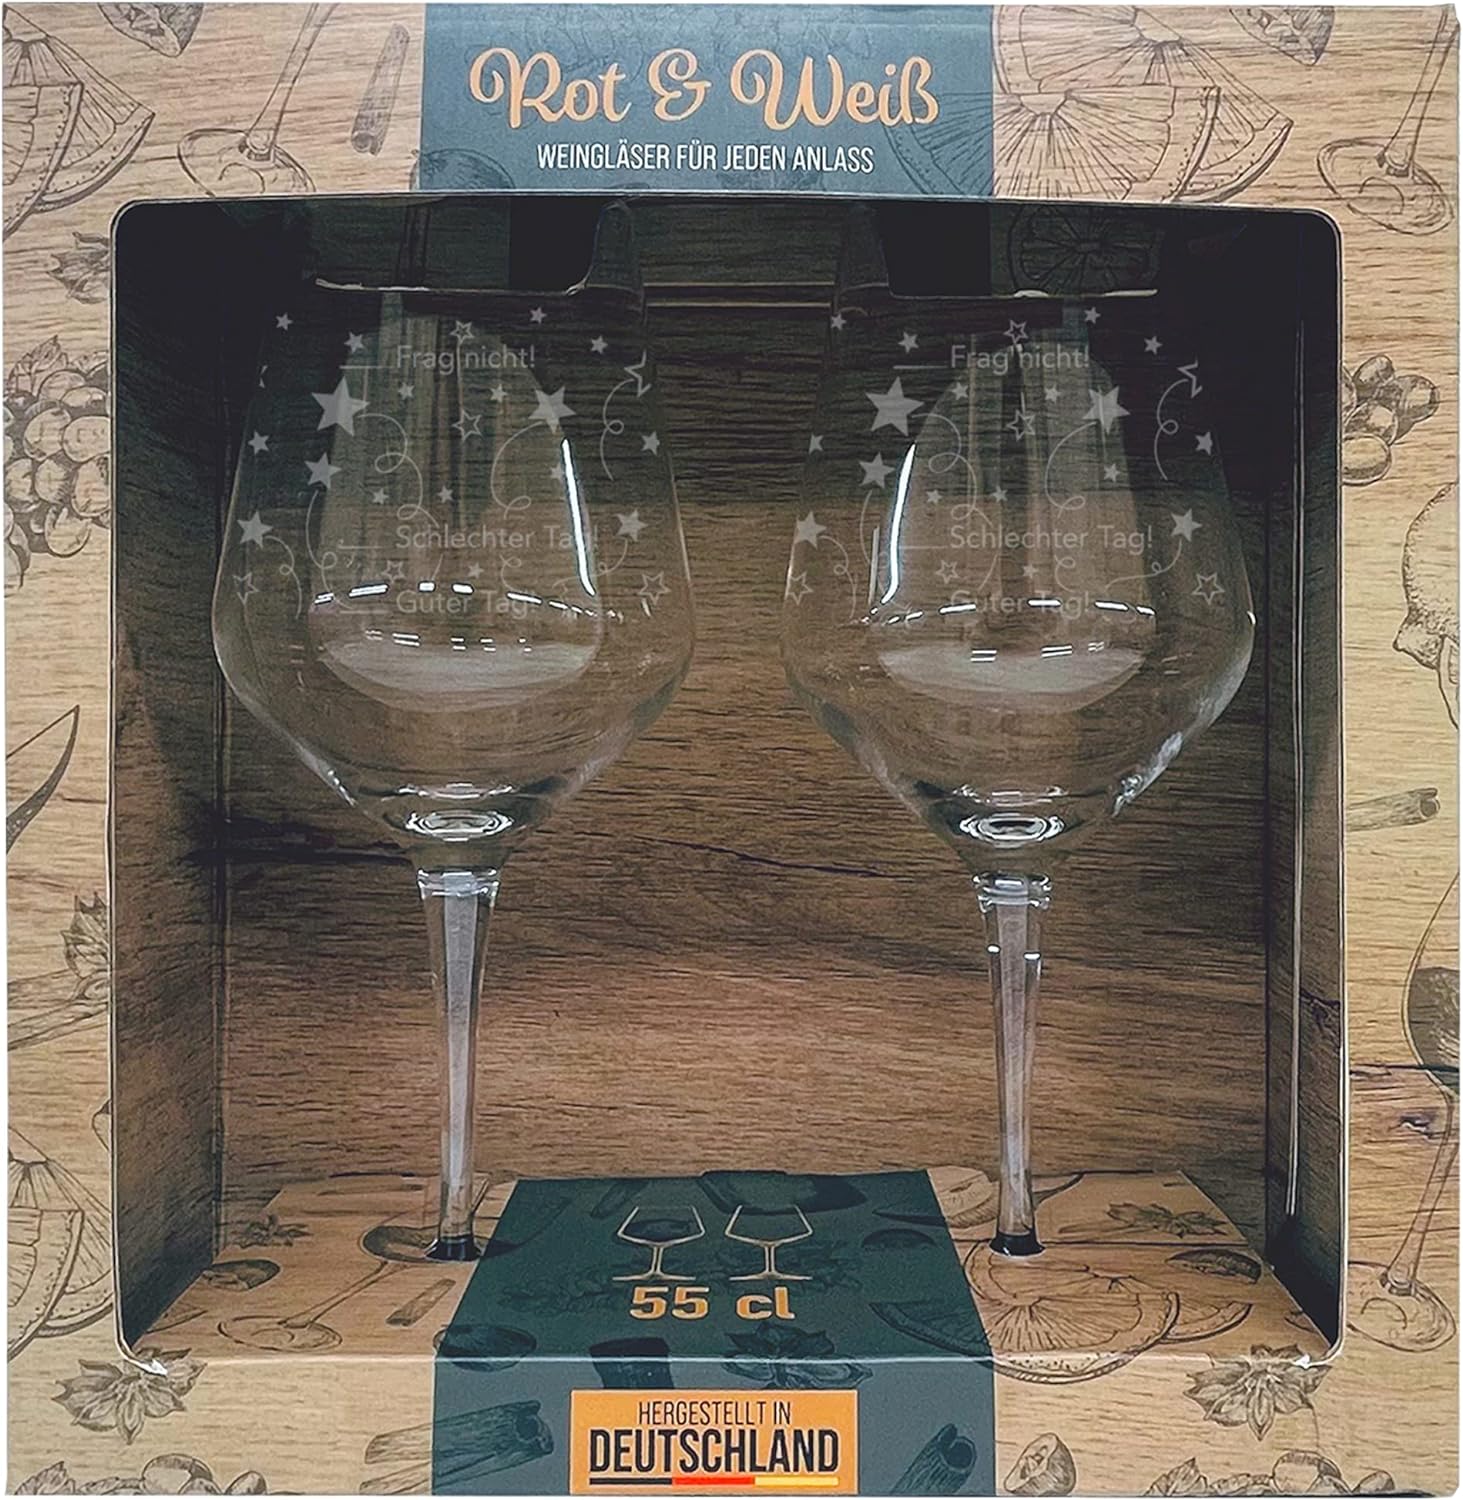 Kristall-Weinglas-550ml-Guter-Tag/Schlechter-Tag-inklusive-Geschenkbox-berlindeluxe-trauben-weinglas-verpackung-zwei